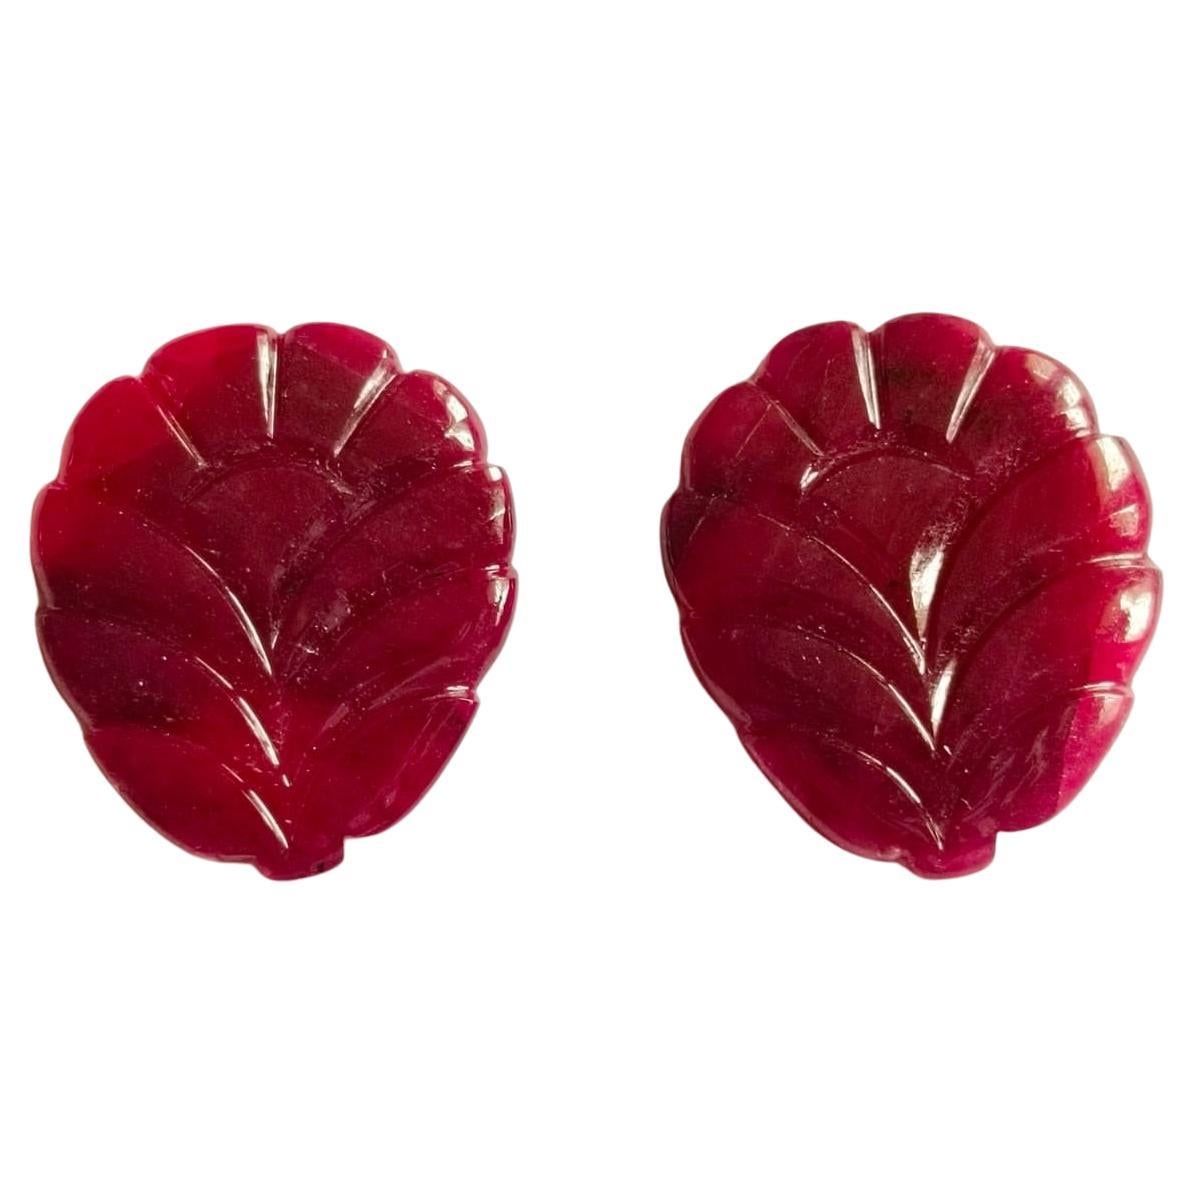 25.14 Carat Ruby Carving Leaf Shape Pair Loose Gemstone (Pierre précieuse en vrac)